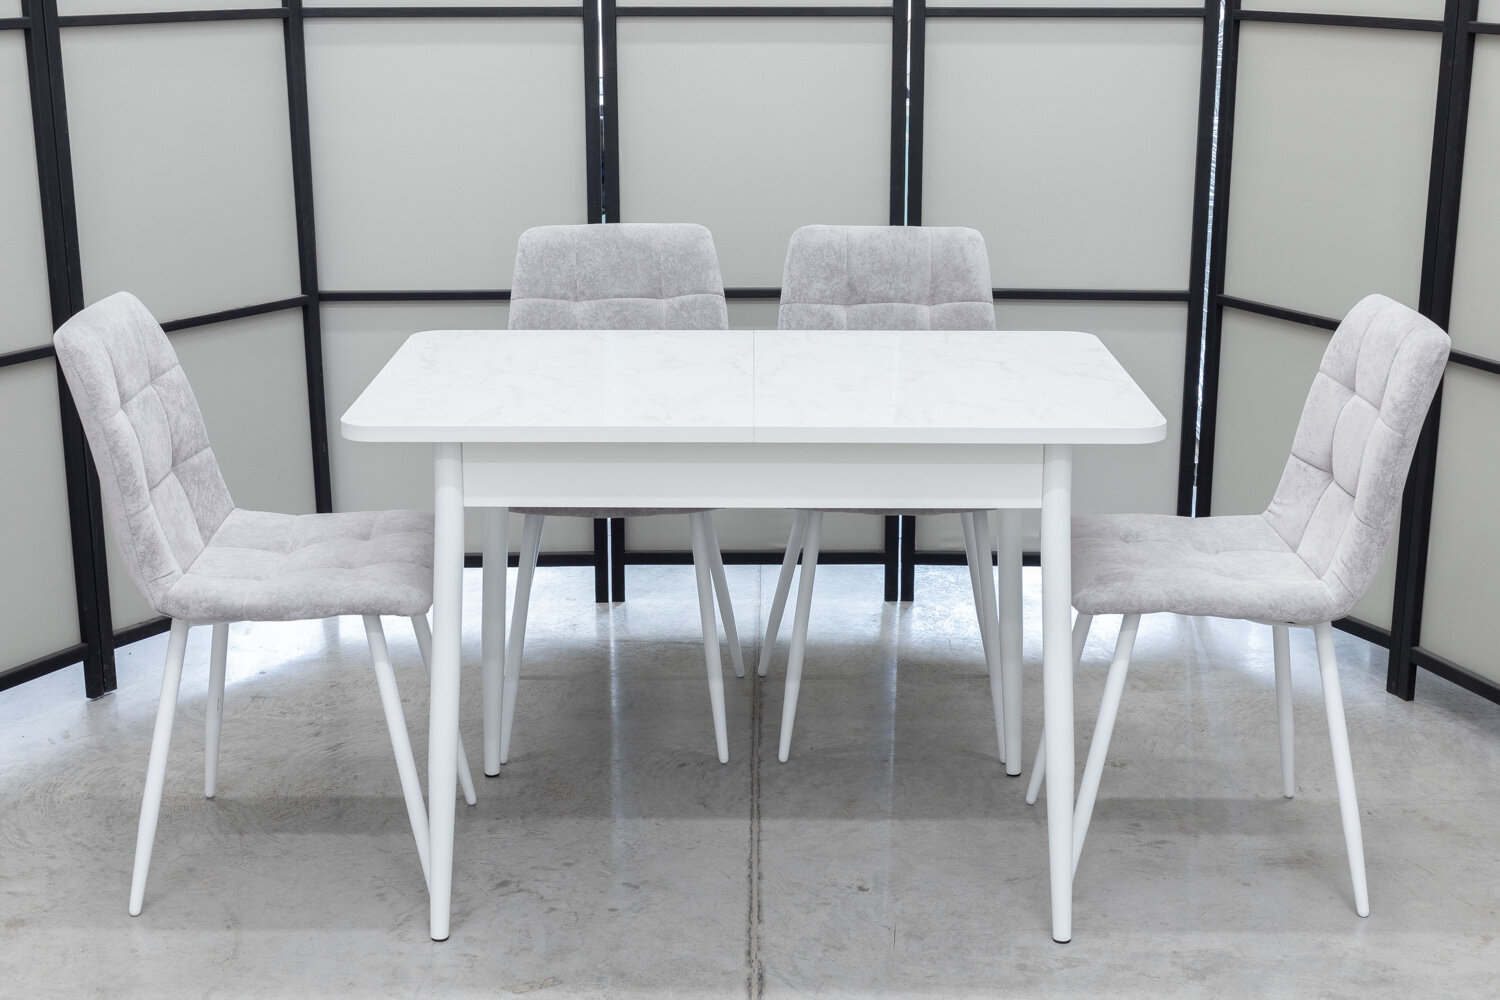 Обеденная группа Ост Кватро, стол белый термопластик, 110(140)х70 см, обивка стульев антивандальная, моющаяся, антикоготь, цвет светло-серый - фотография № 1